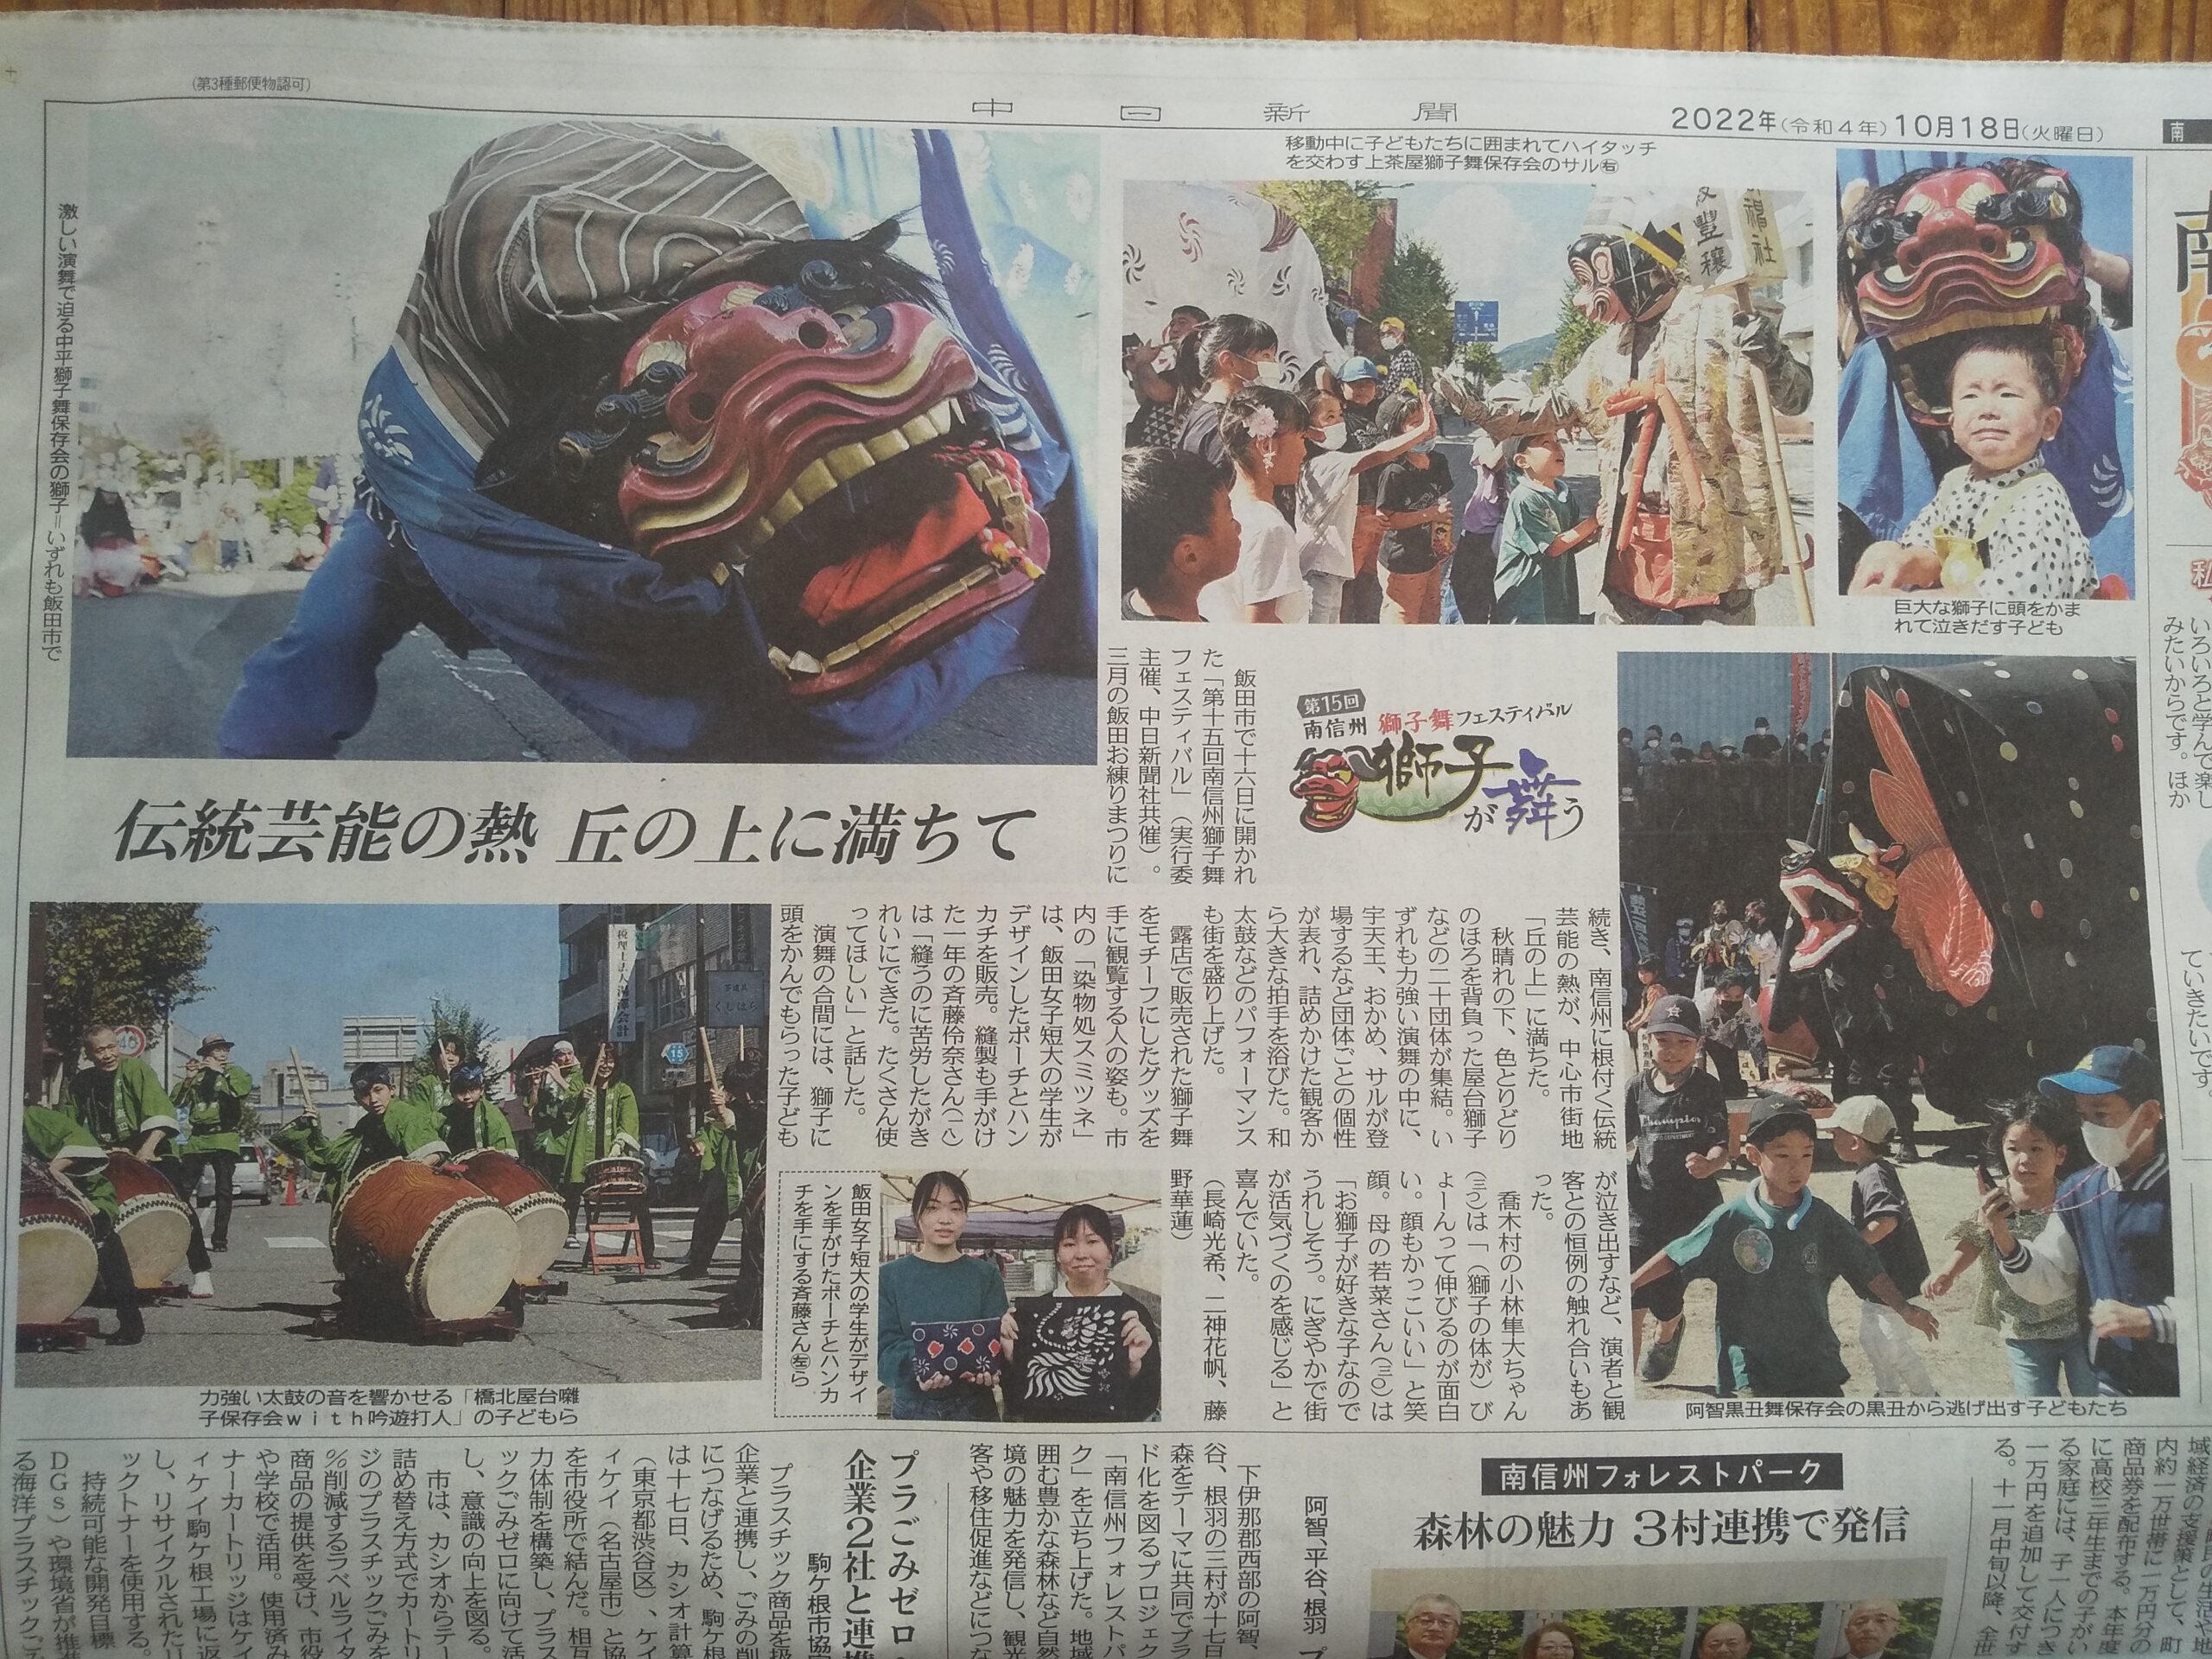 「中日新聞」様で、「飯田女子短期大学さんとのコラボ企画」の記事が紹介されました。